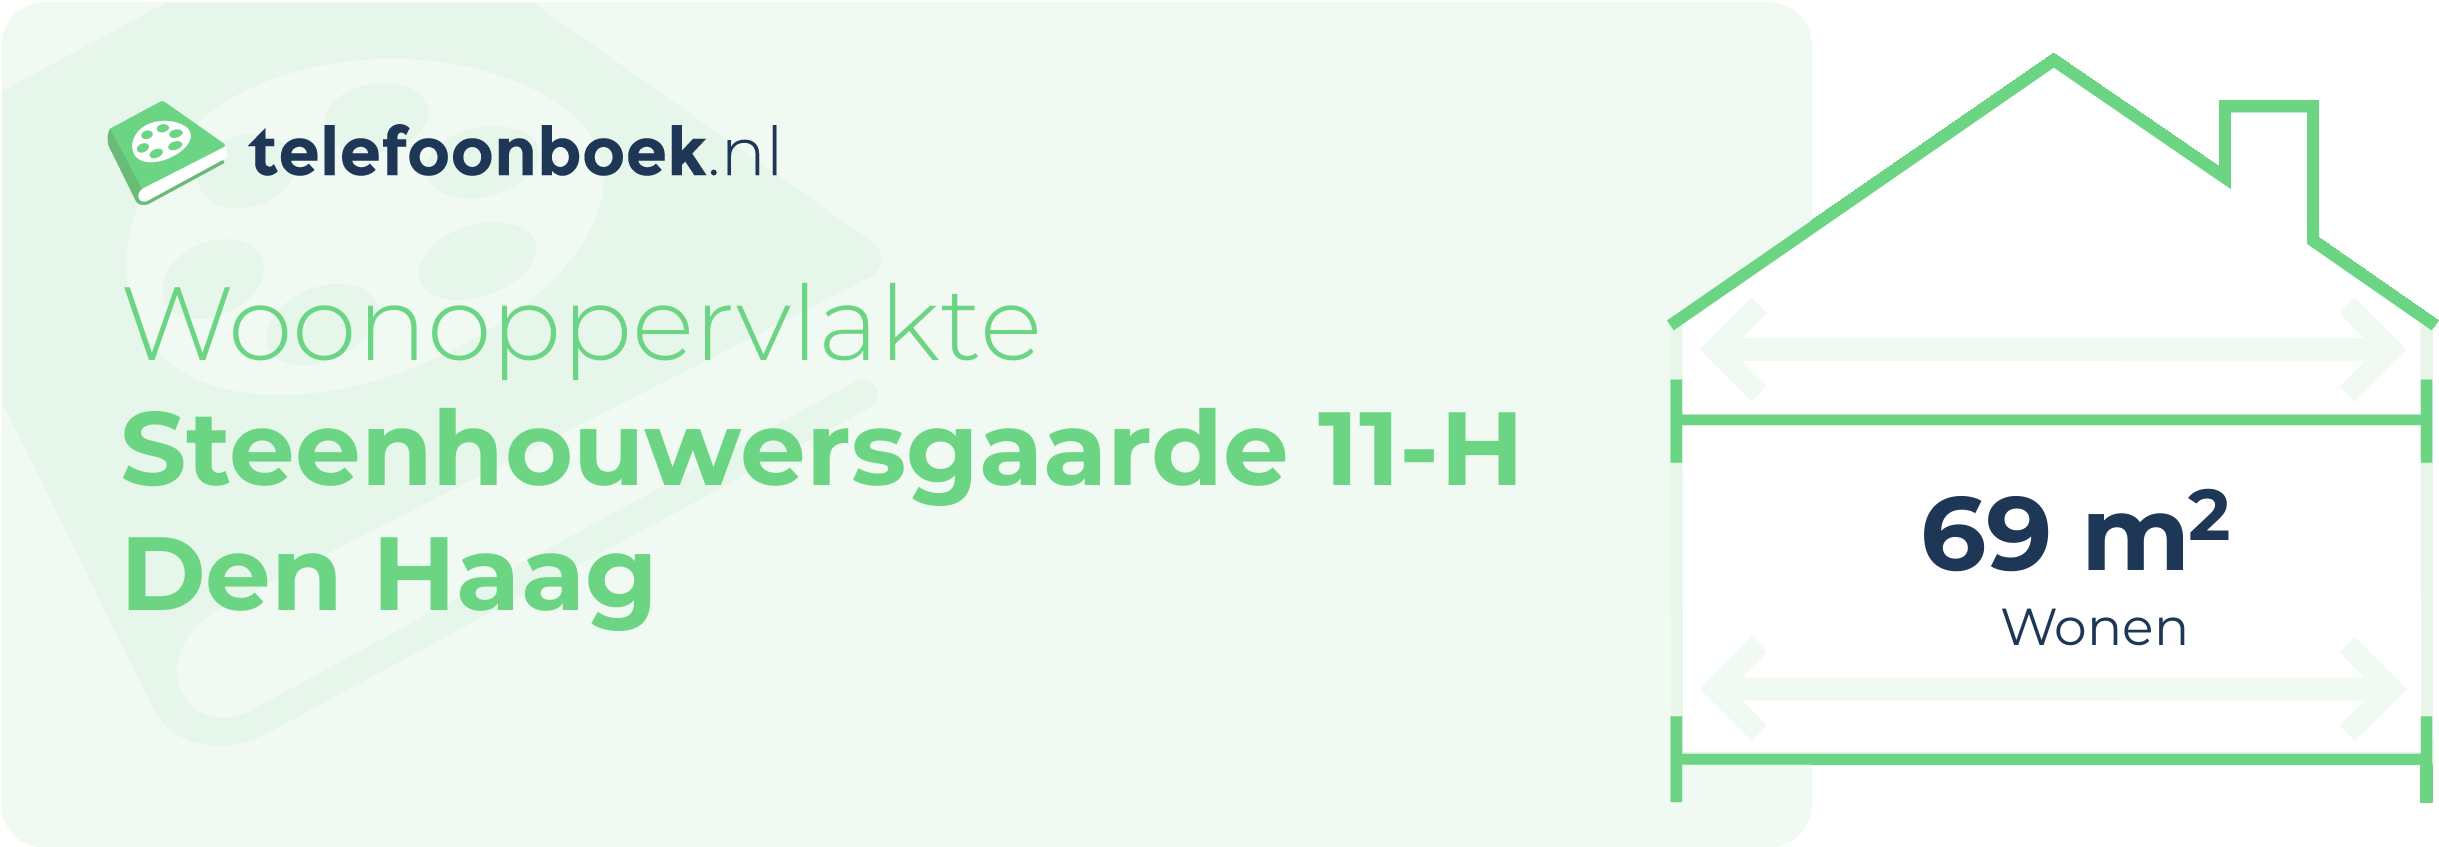 Woonoppervlakte Steenhouwersgaarde 11-H Den Haag